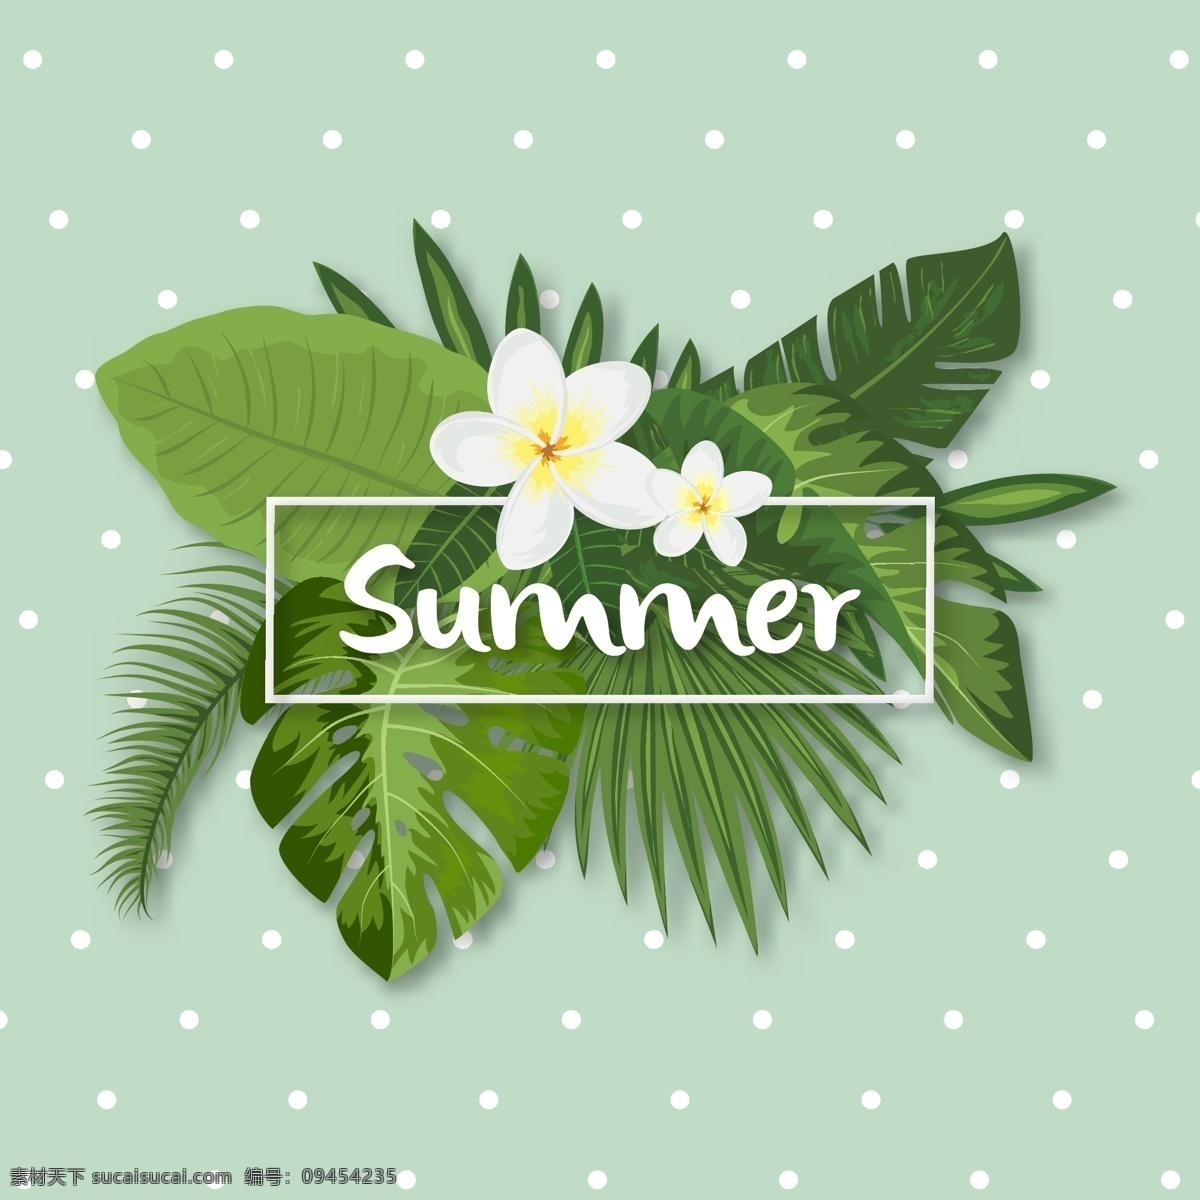 热带夏季设计 背景 花卉 框架 海报 派对 卡片 边界 夏天 树叶 绿色 海洋 海滩 阳光 假期 热带 植物 丛林 点点